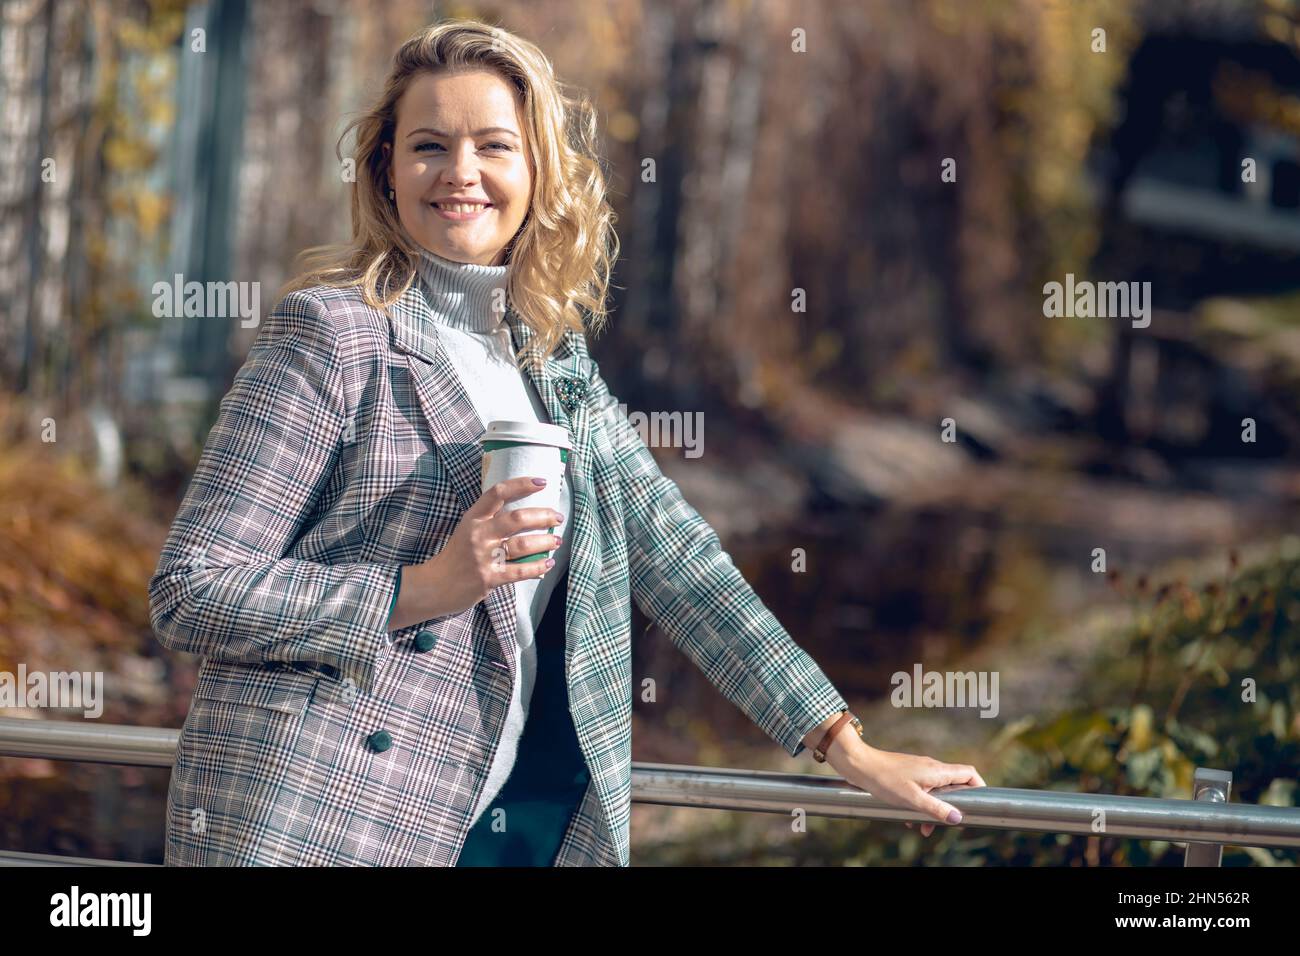 Porträt einer attraktiven lächelnden Frau mittleren Alters in karierter Jacke und grauem Rollkragen-Pullover stehen auf Metallbrücke. Stockfoto